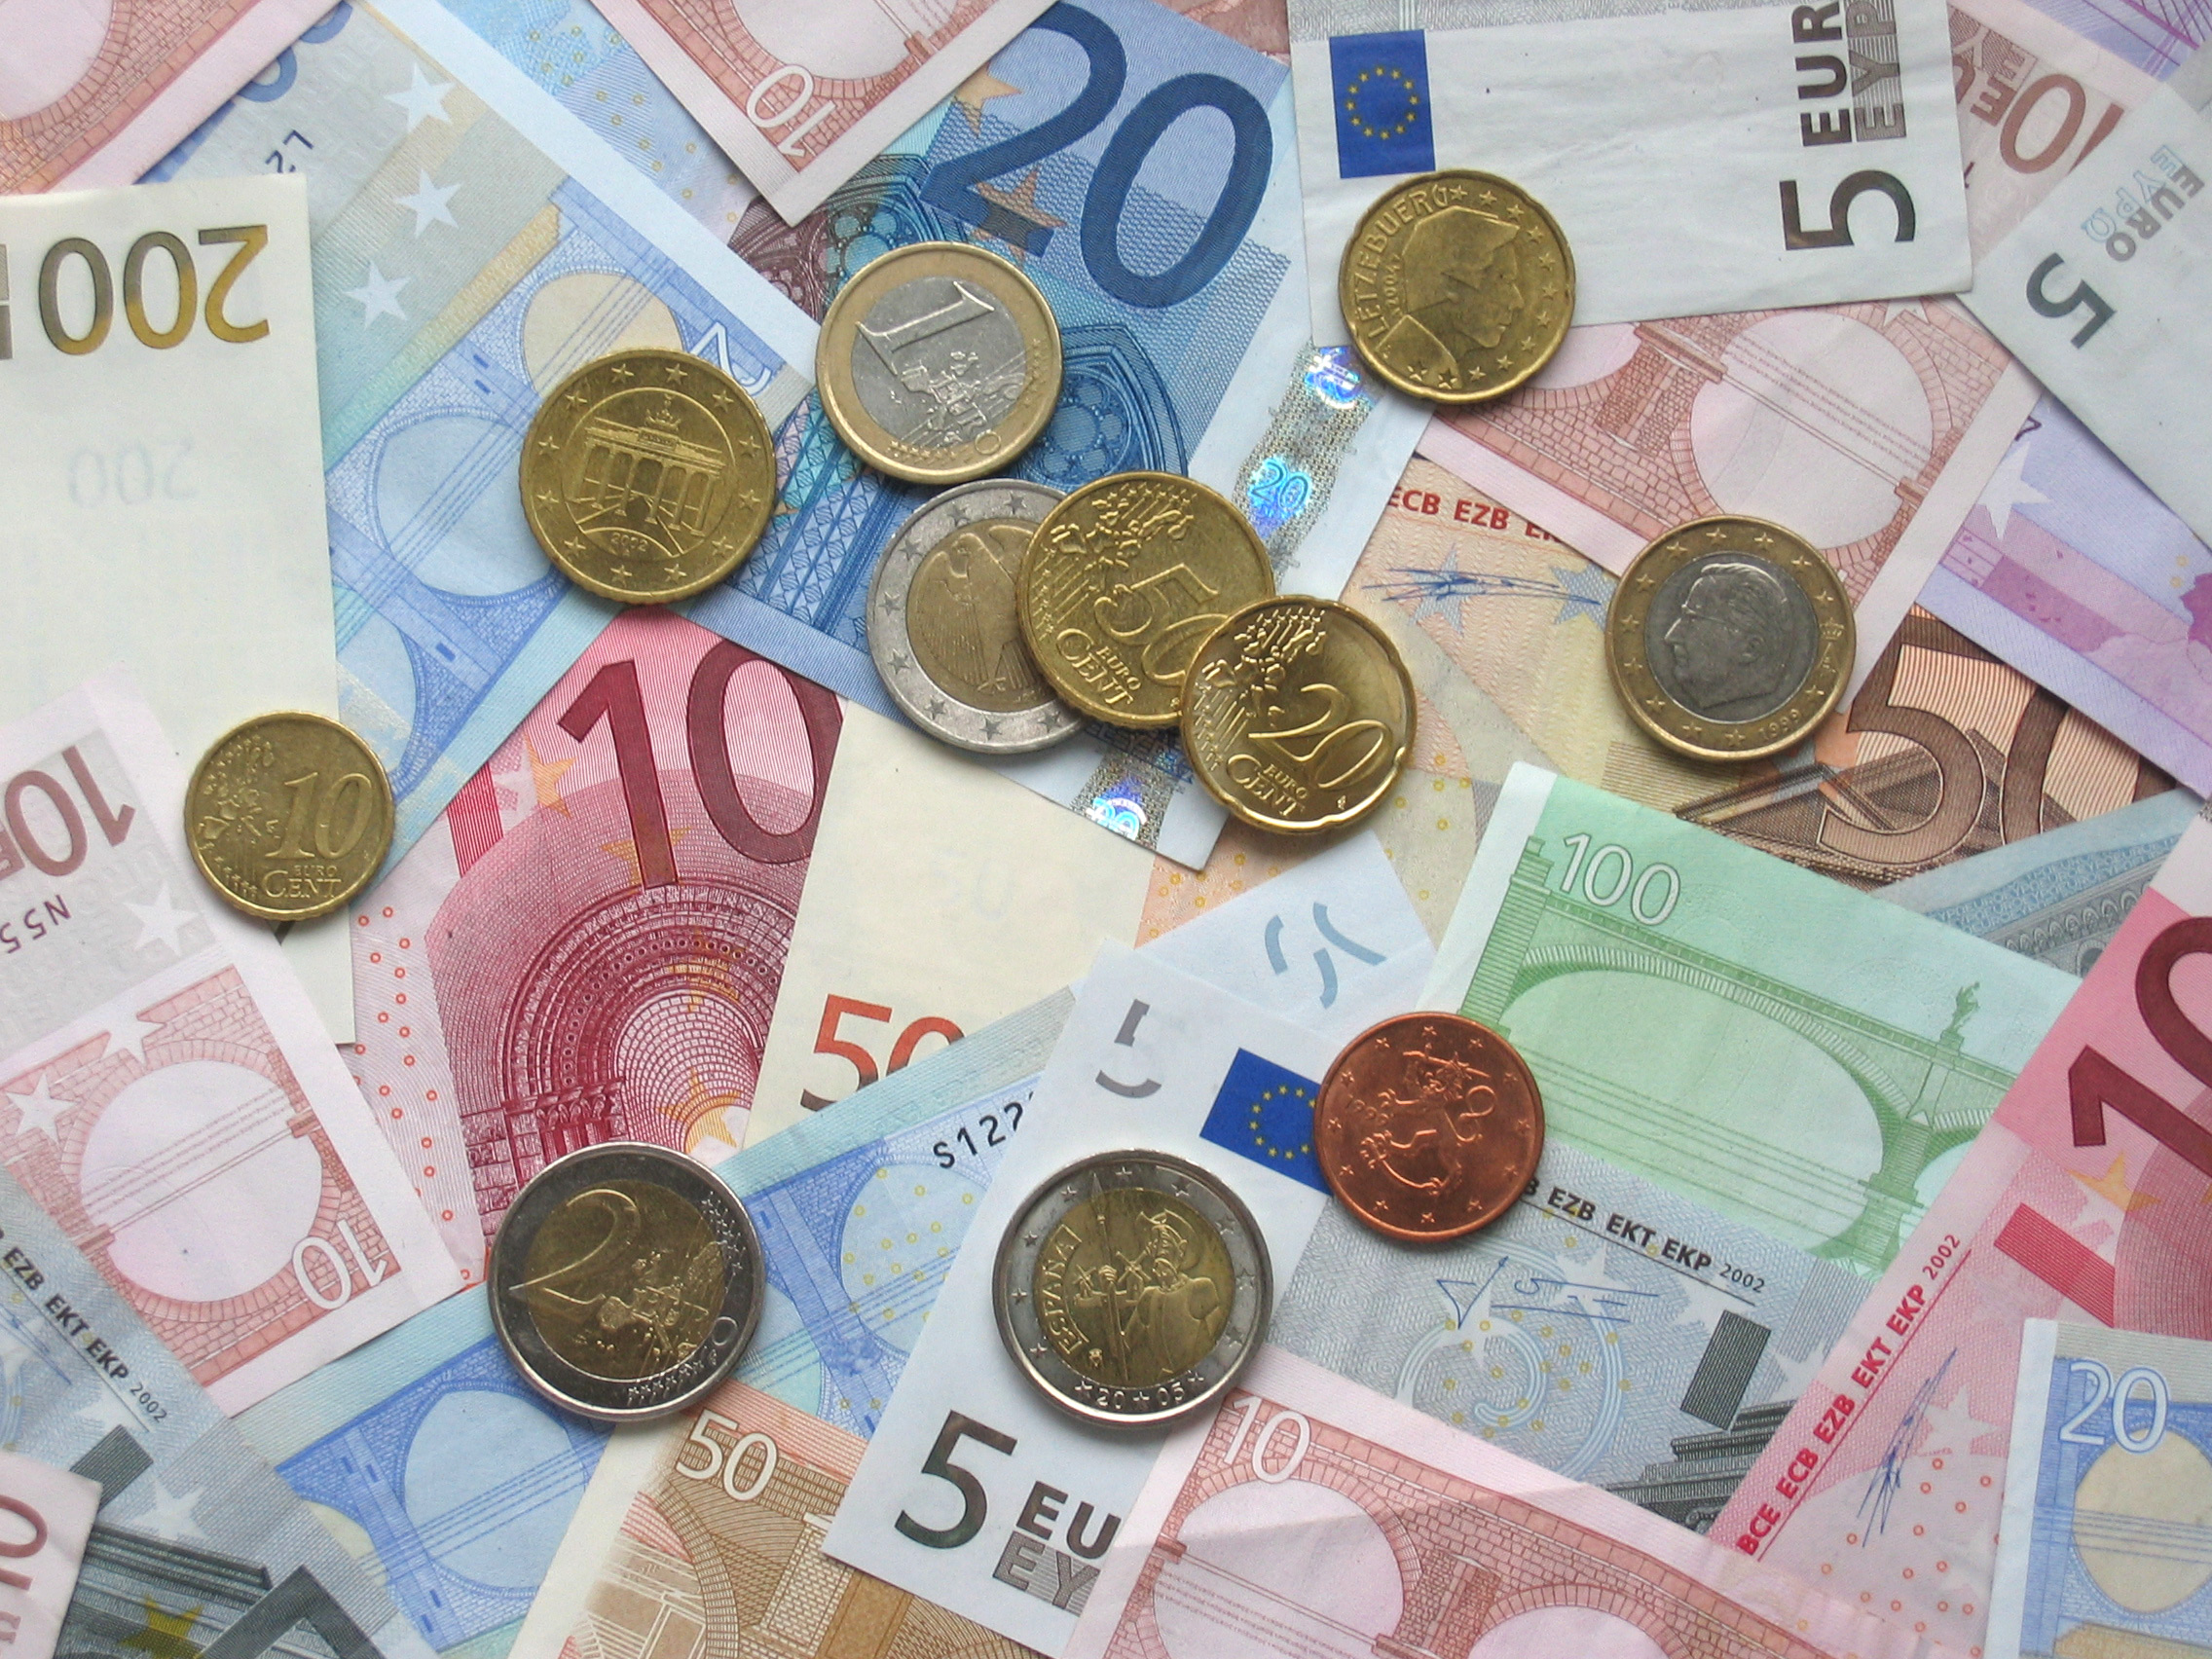 €9.25 NMW ‘lacks economic basis’